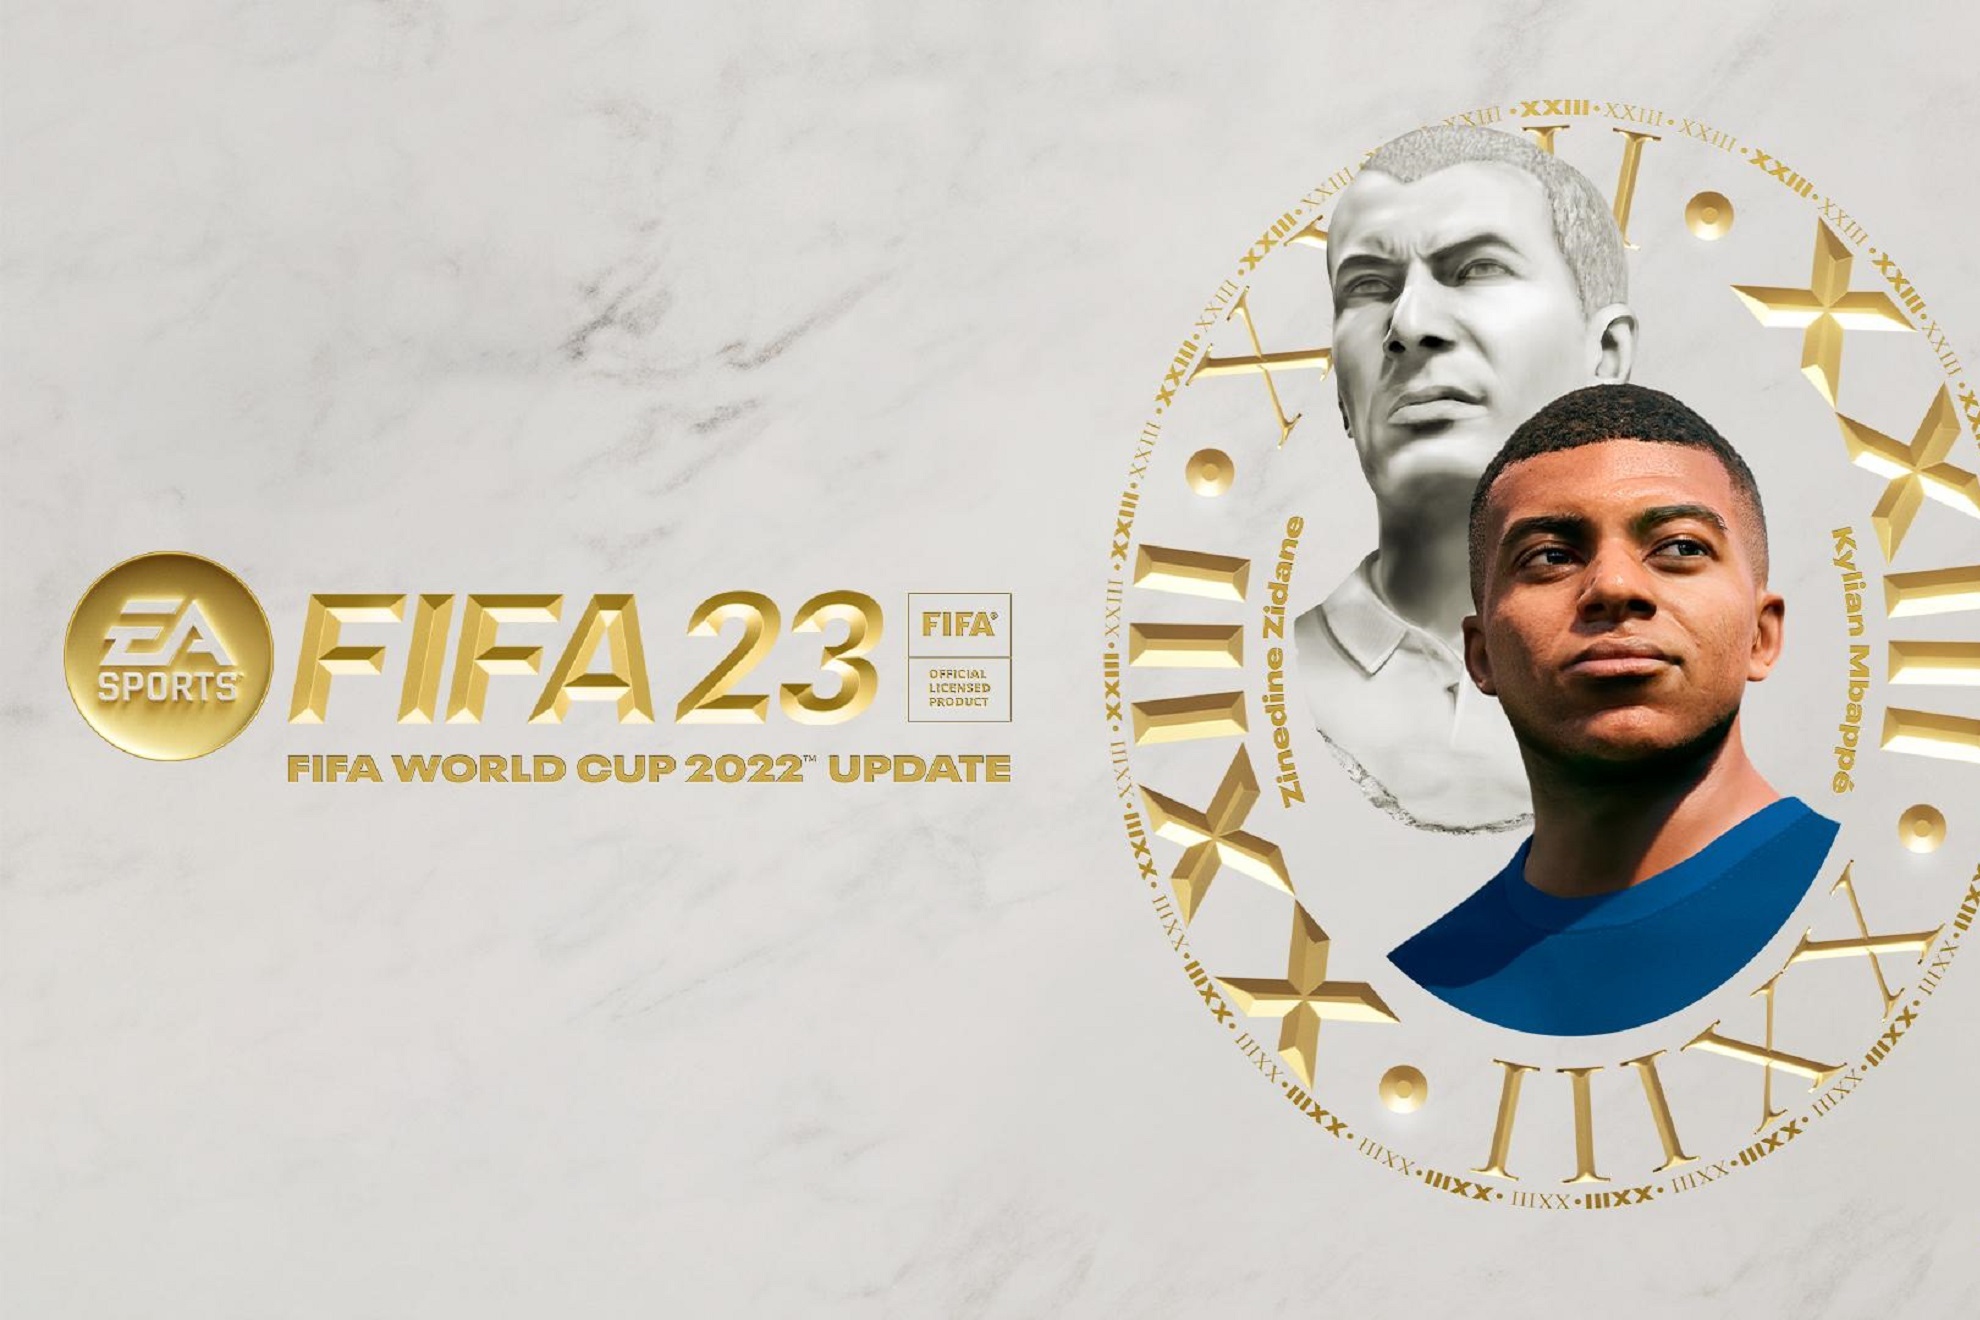 FIFA 23 estrena el nuevo modo FIFA World Cup 2022 de forma gratuita. EA